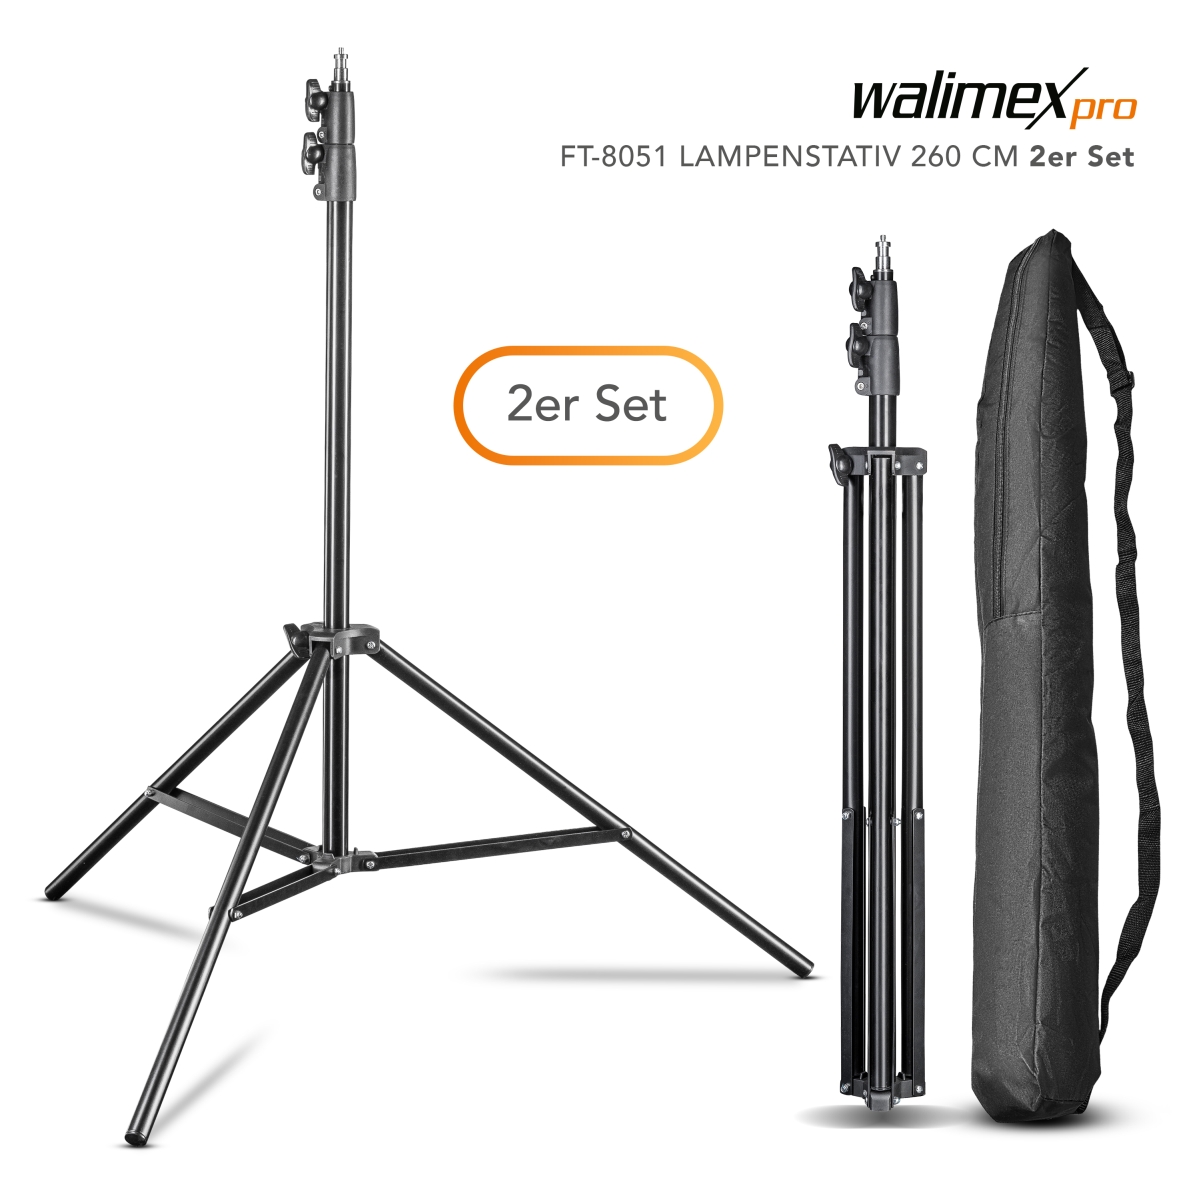 Walimex pro FT-8051 Lampenstativ 260cm 2er Set